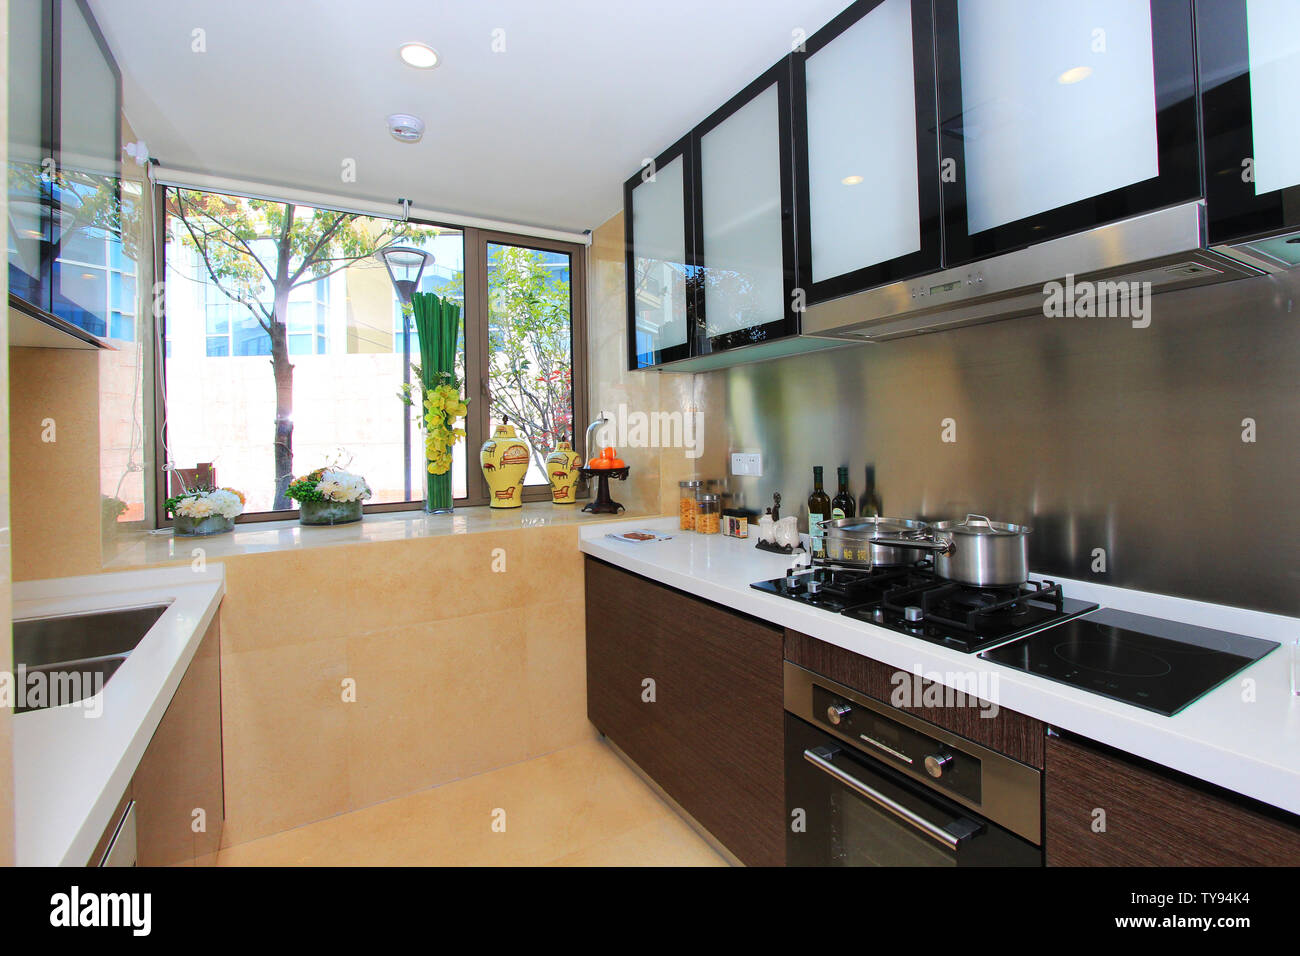 Küche Inneneinrichtung, Interior Design, als köstliche Küche unbegrenzte Ideen für Designer zu bringen Stockfoto